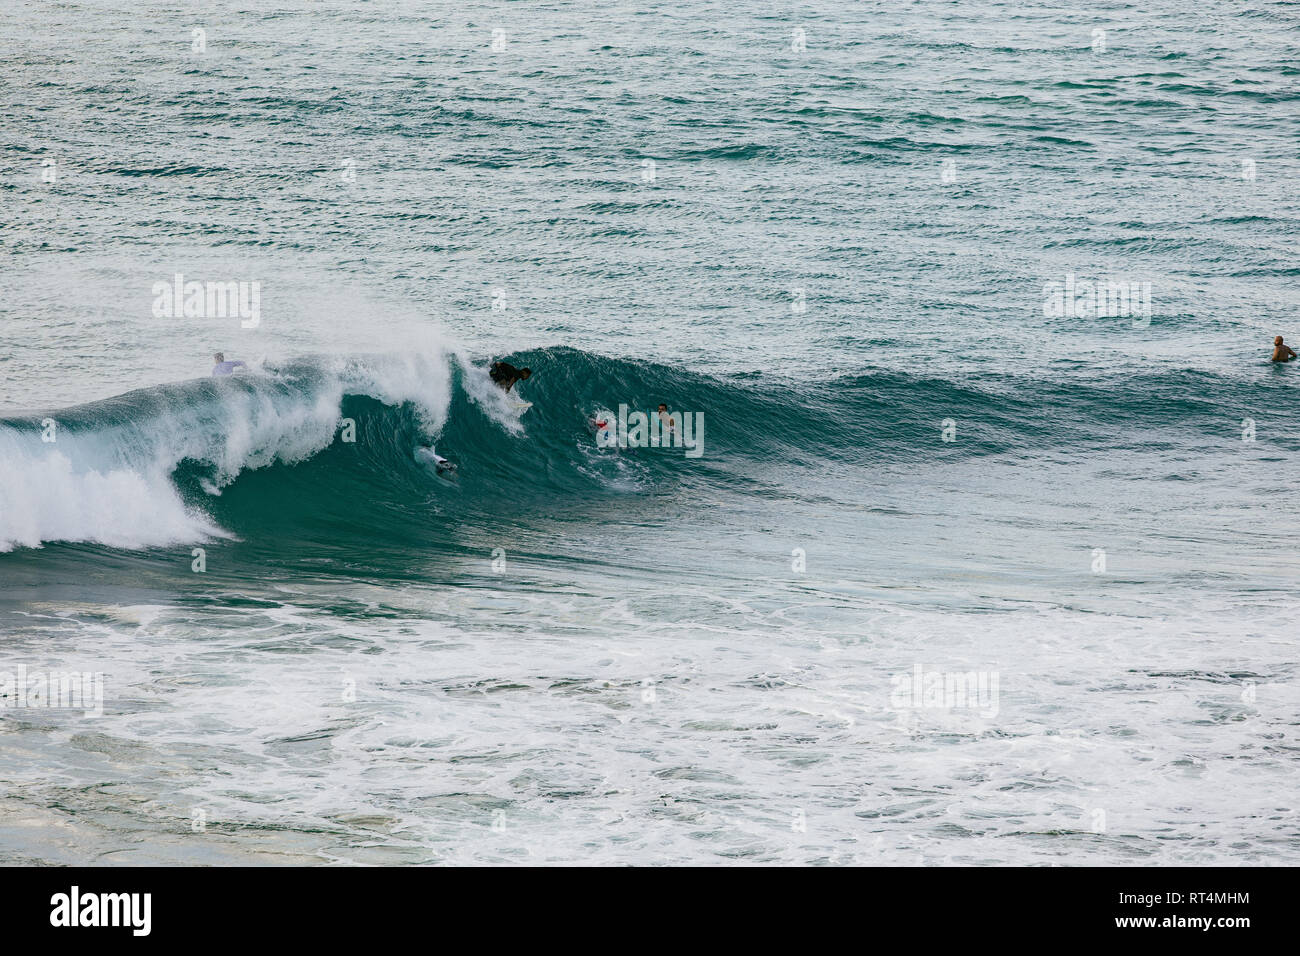 Professionelle surfer Surfen im weltklasse Wellen von Fernando de Noronha, einer Insel an der Nordküste von Brasilien Stockfoto